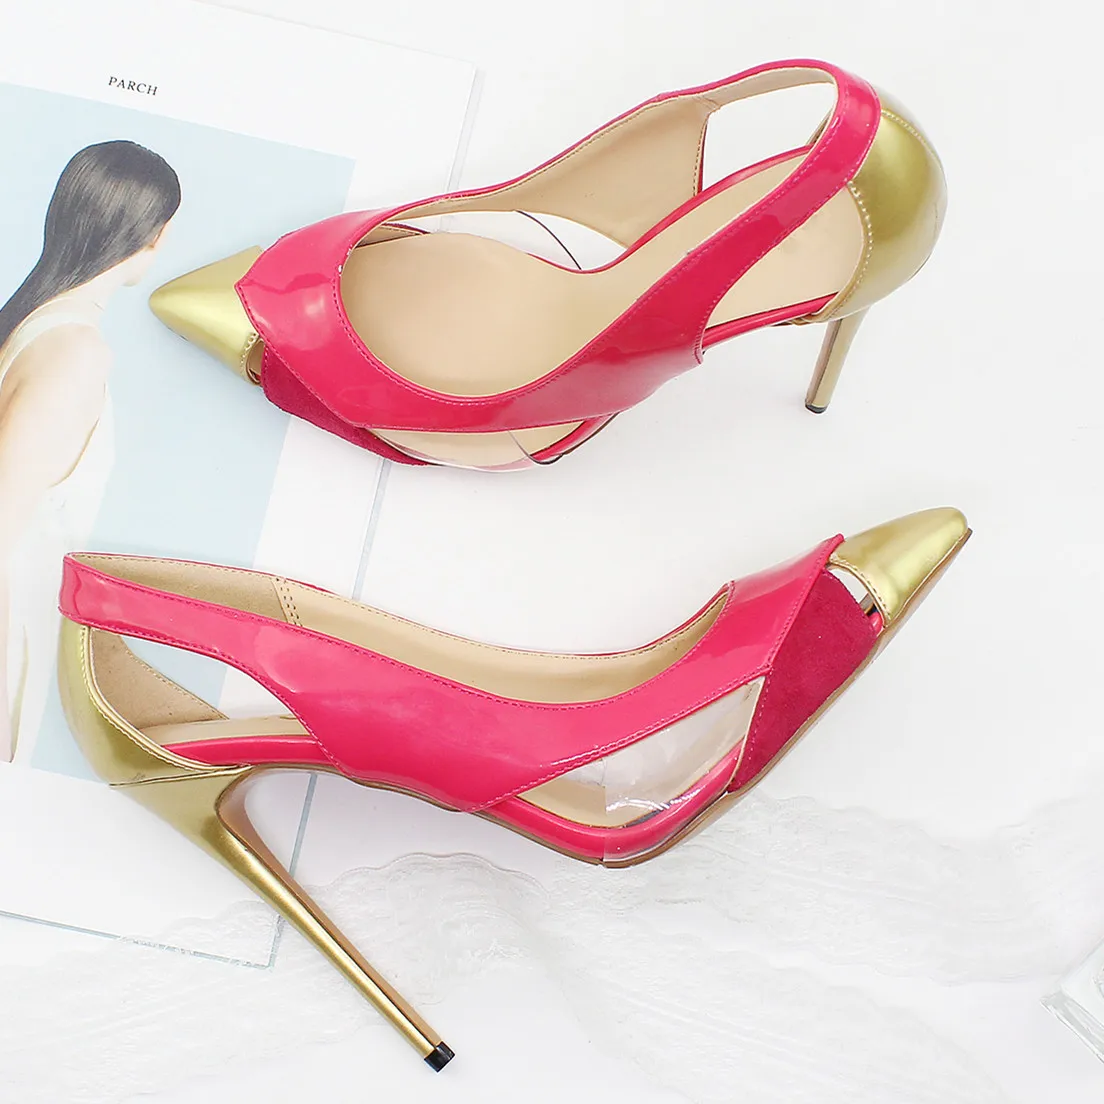 Сексуальный Дизайн, разноцветные туфли-лодочки на высоком каблуке 12 см, модные женские туфли-лодочки с острым носком для Свадебного банкета, Женская обувь Большого Размера C008B0